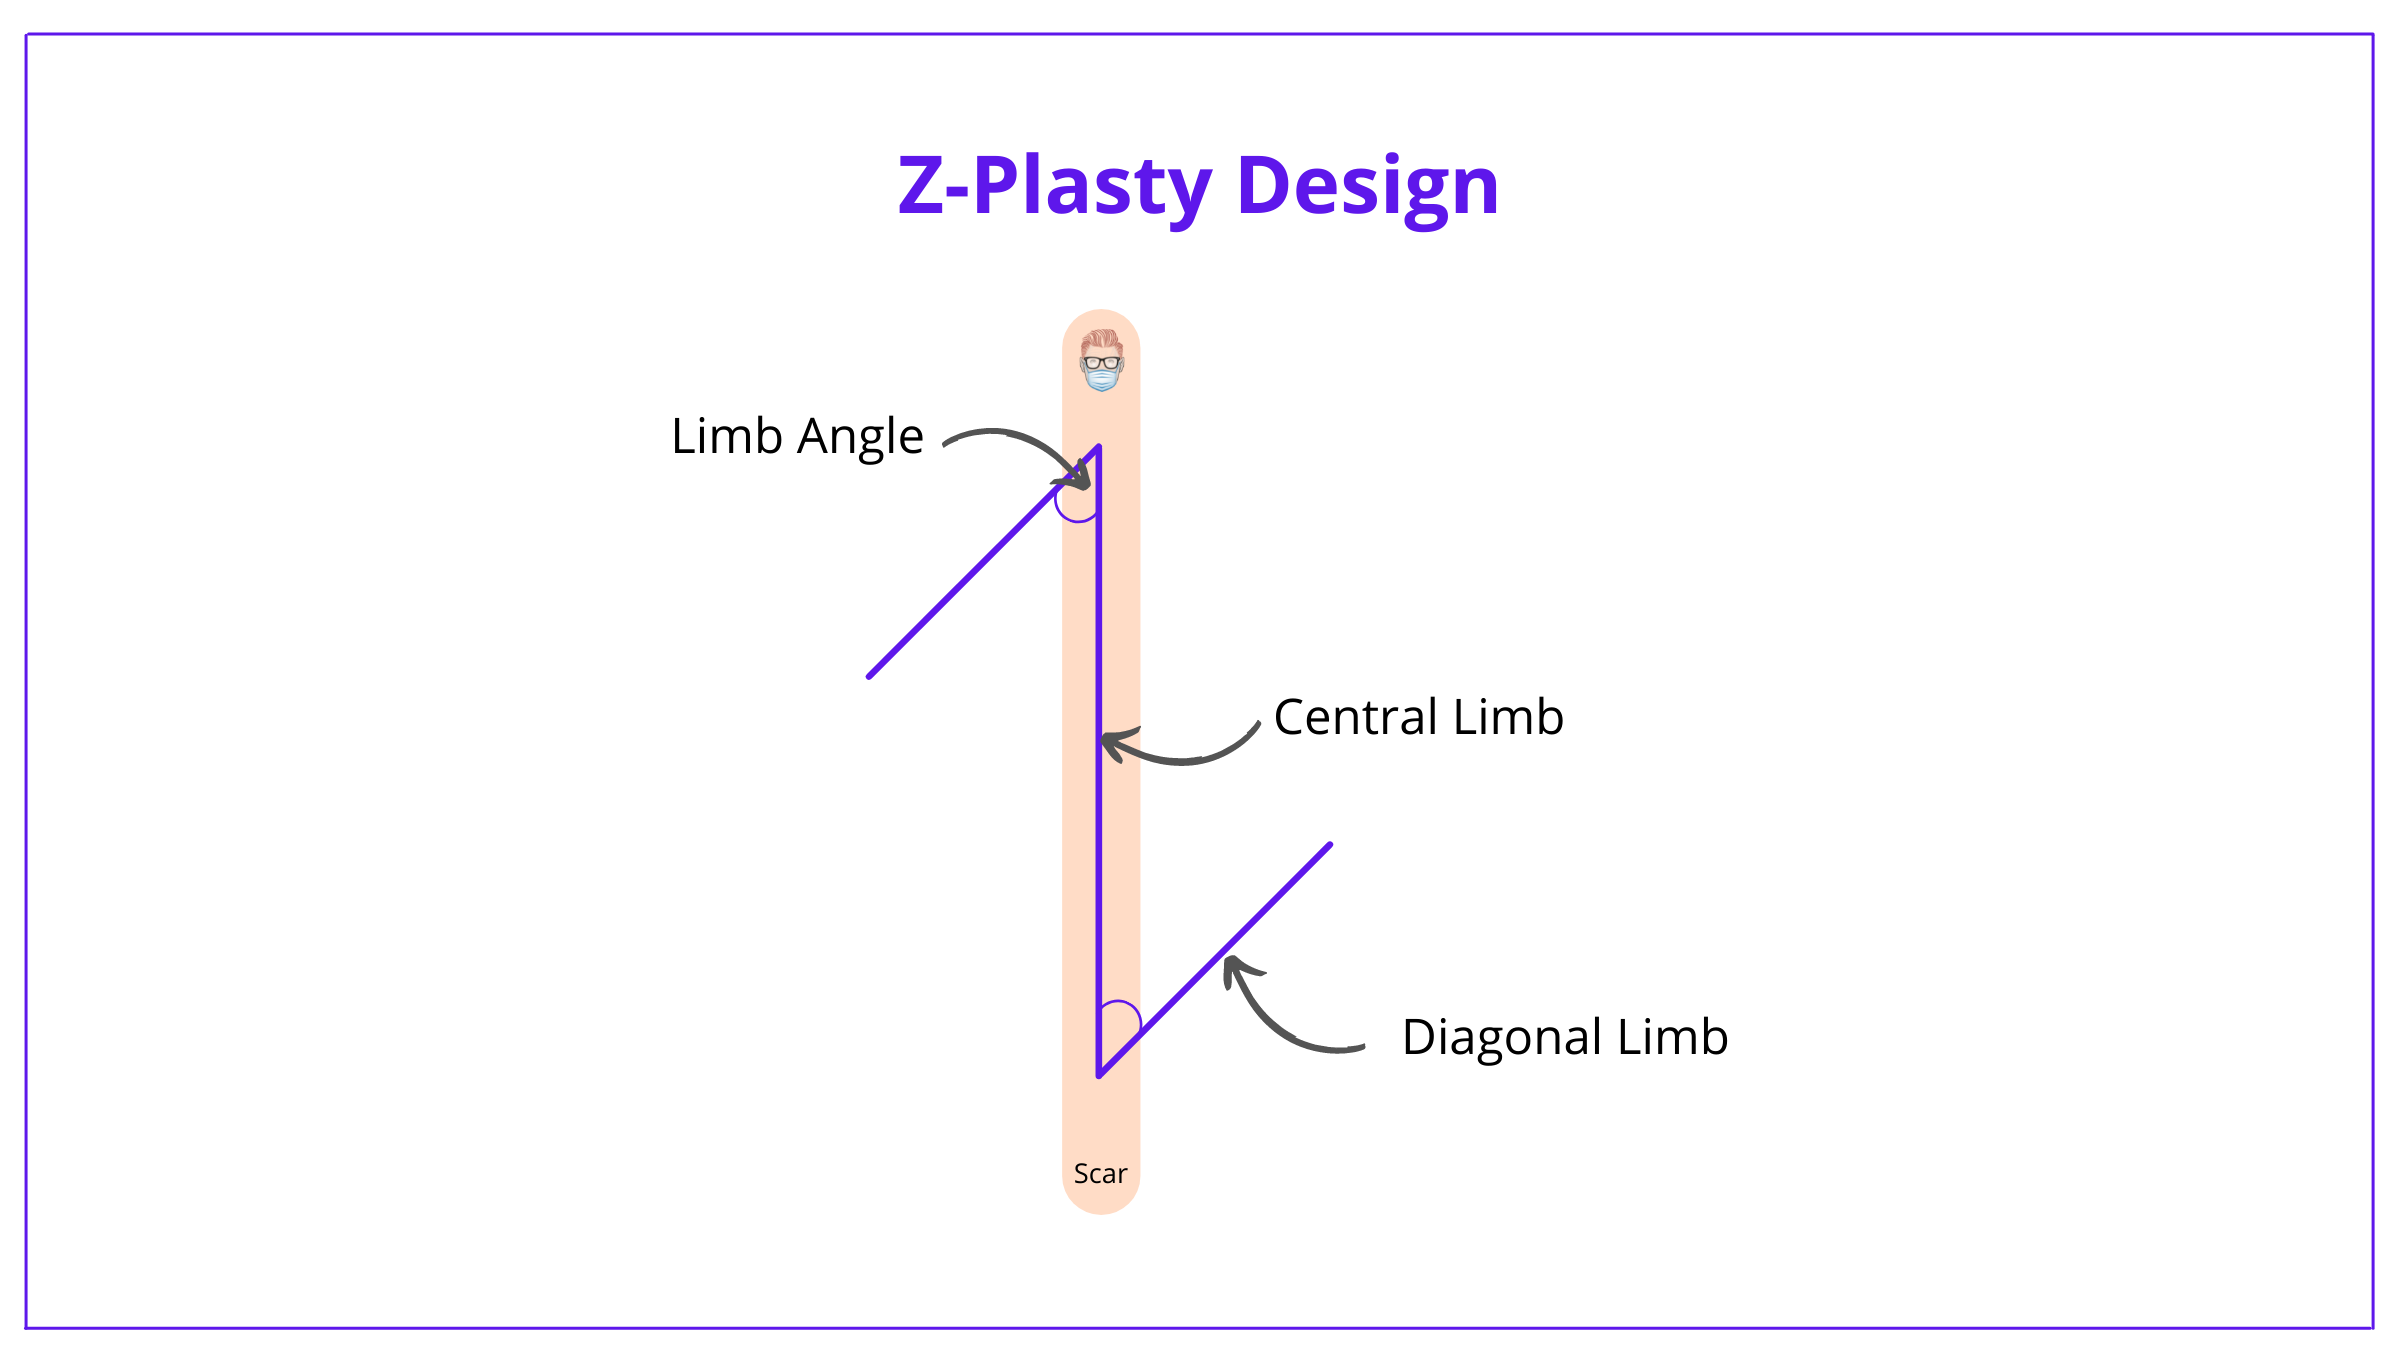 Z-plasty, Z-plasty flap, z-plasty design, z-plasty technique, z-plasty complications